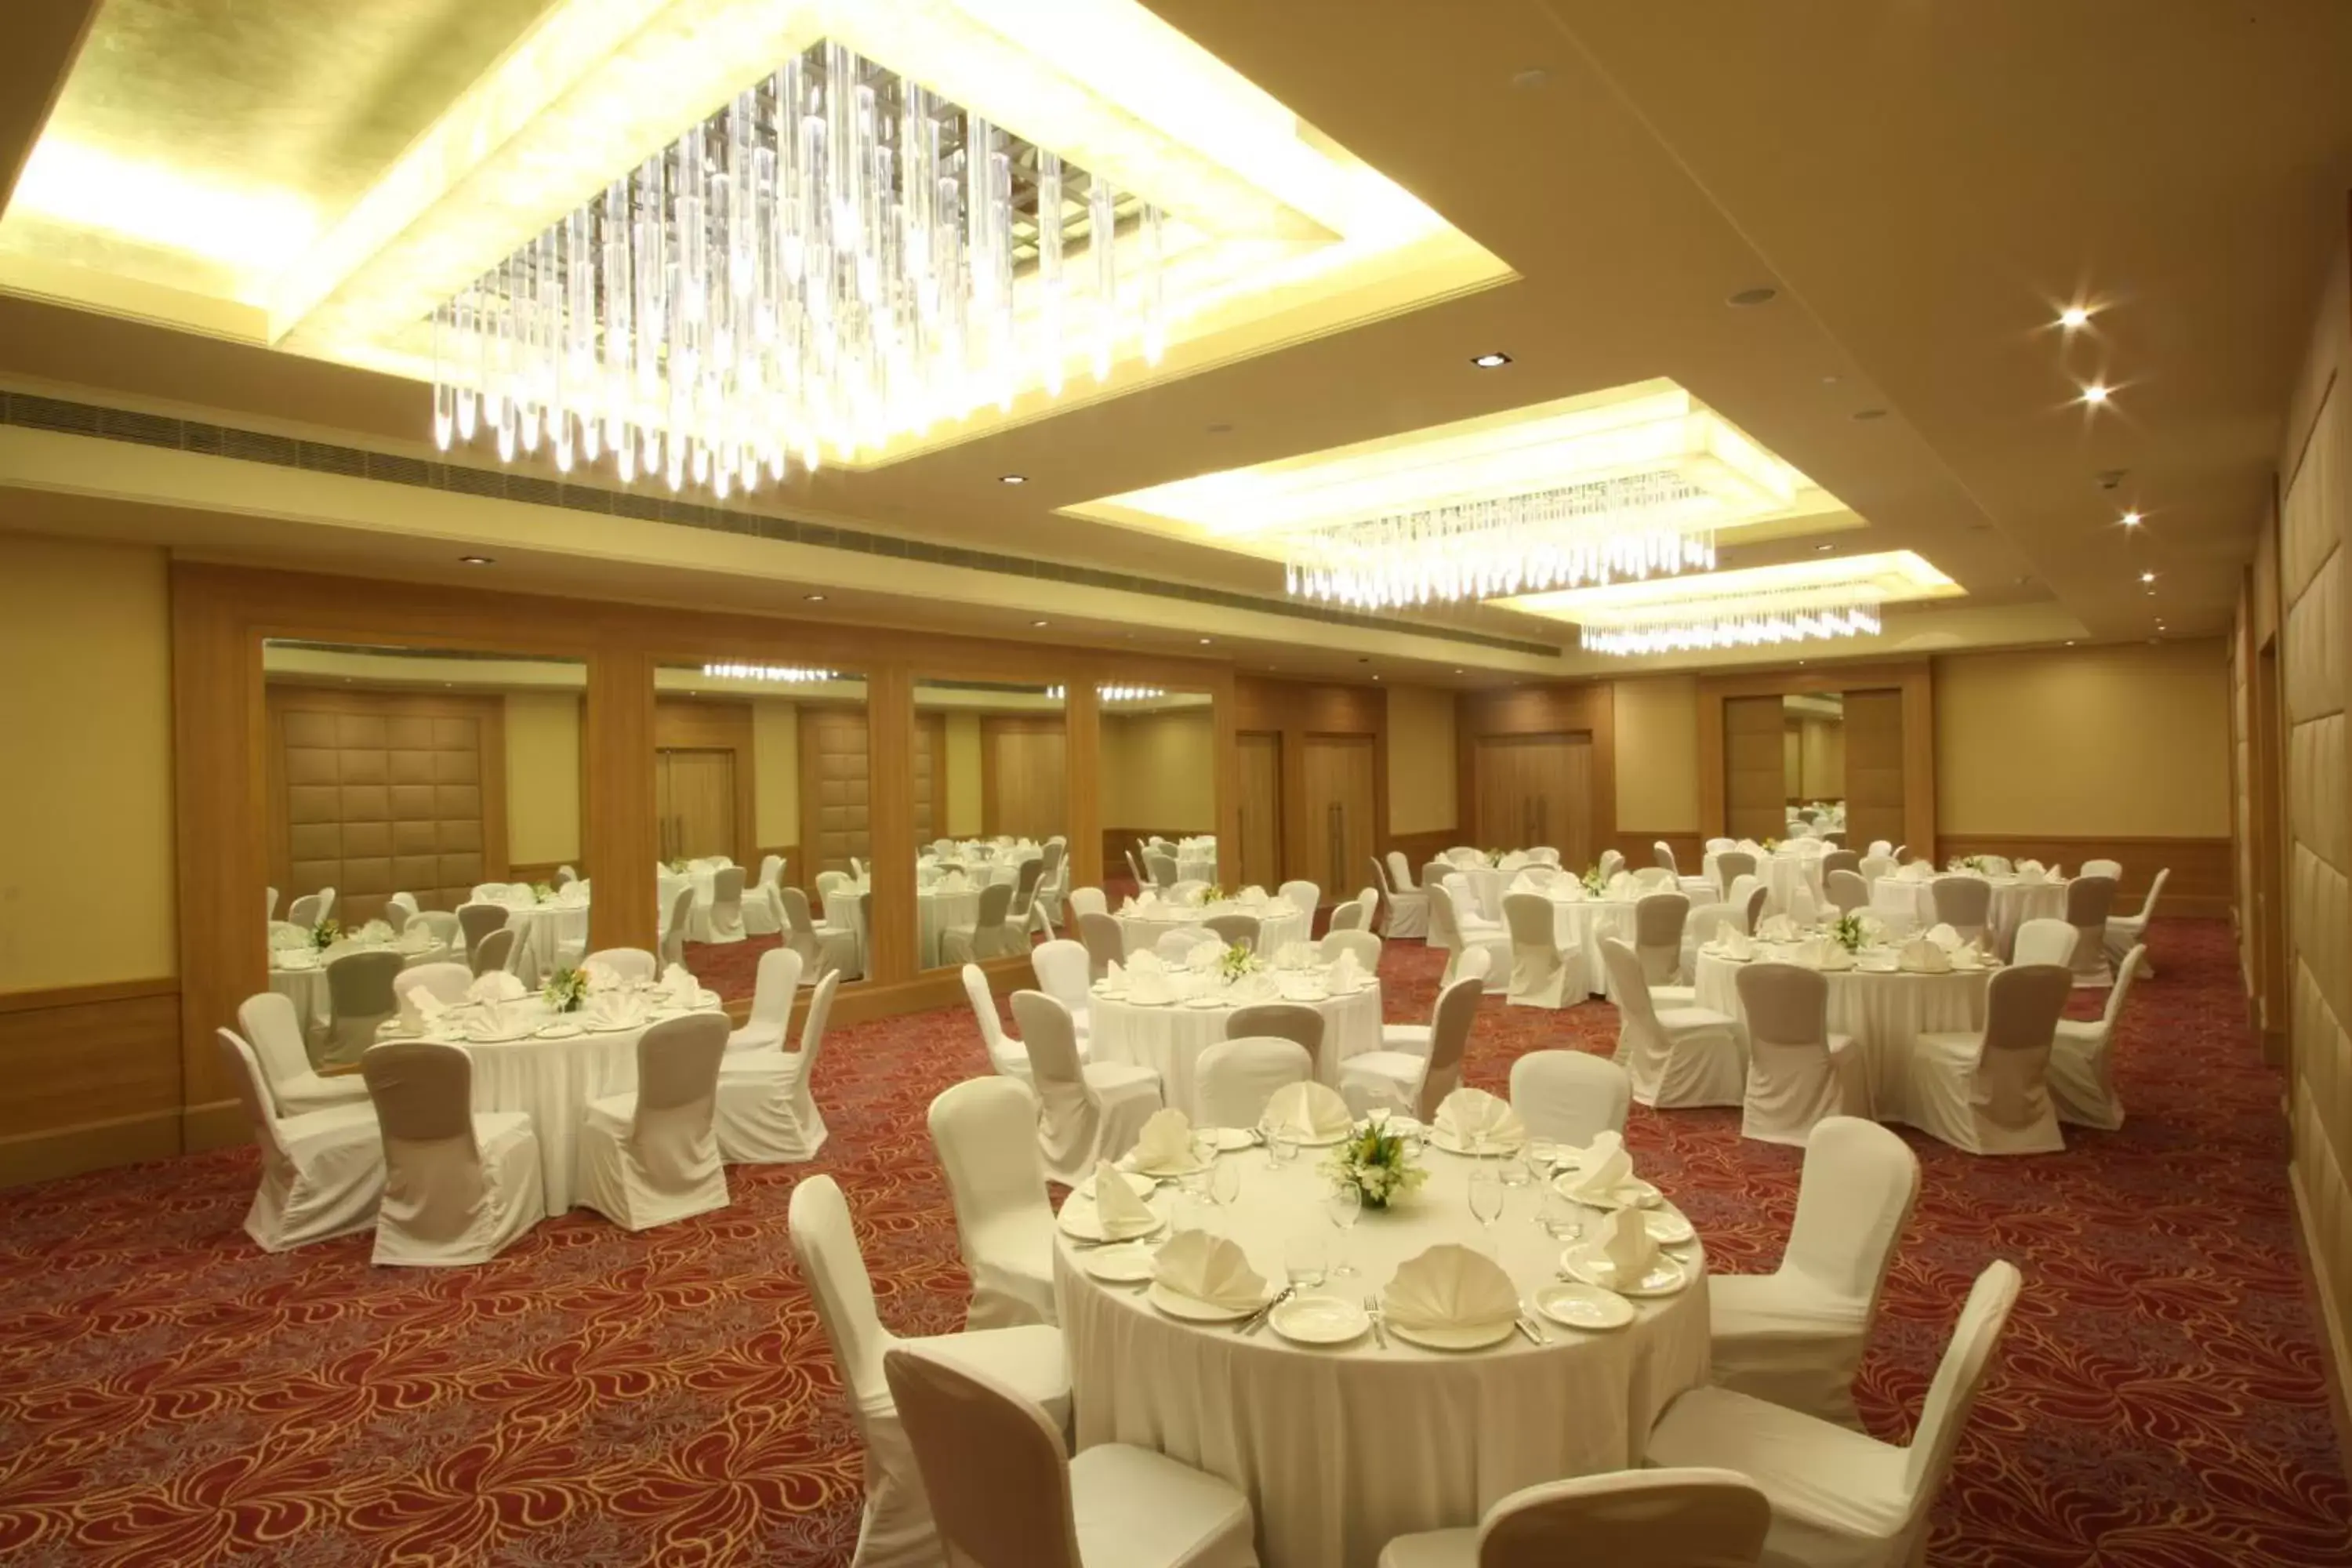 Banquet/Function facilities, Banquet Facilities in Radisson Hyderabad Hitec City